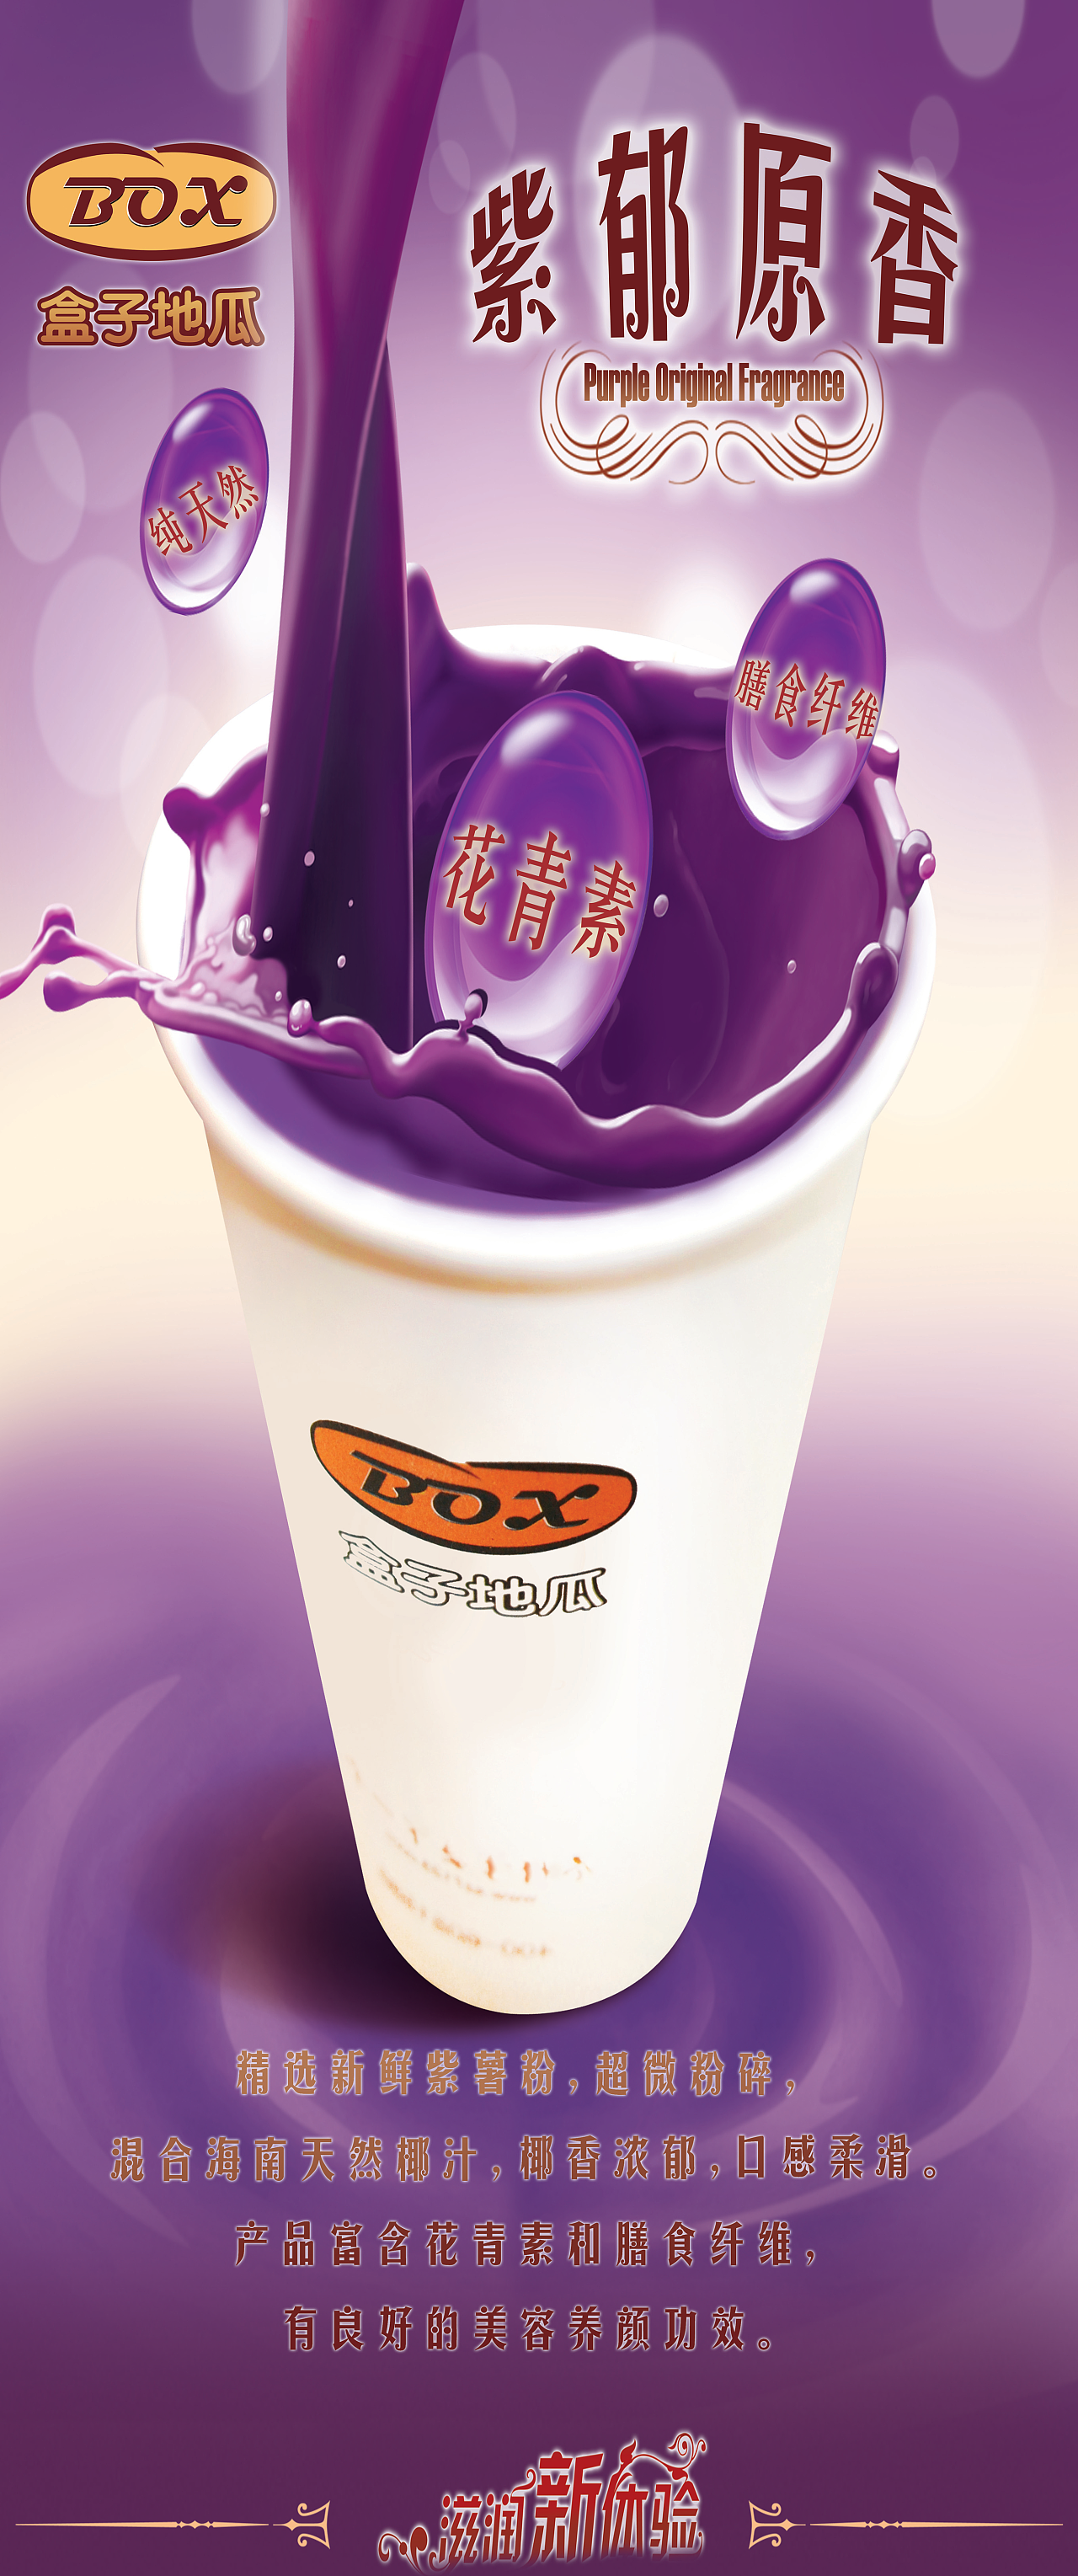 盒子地瓜-紫郁原香广告海报|平面|宣传品|kimon